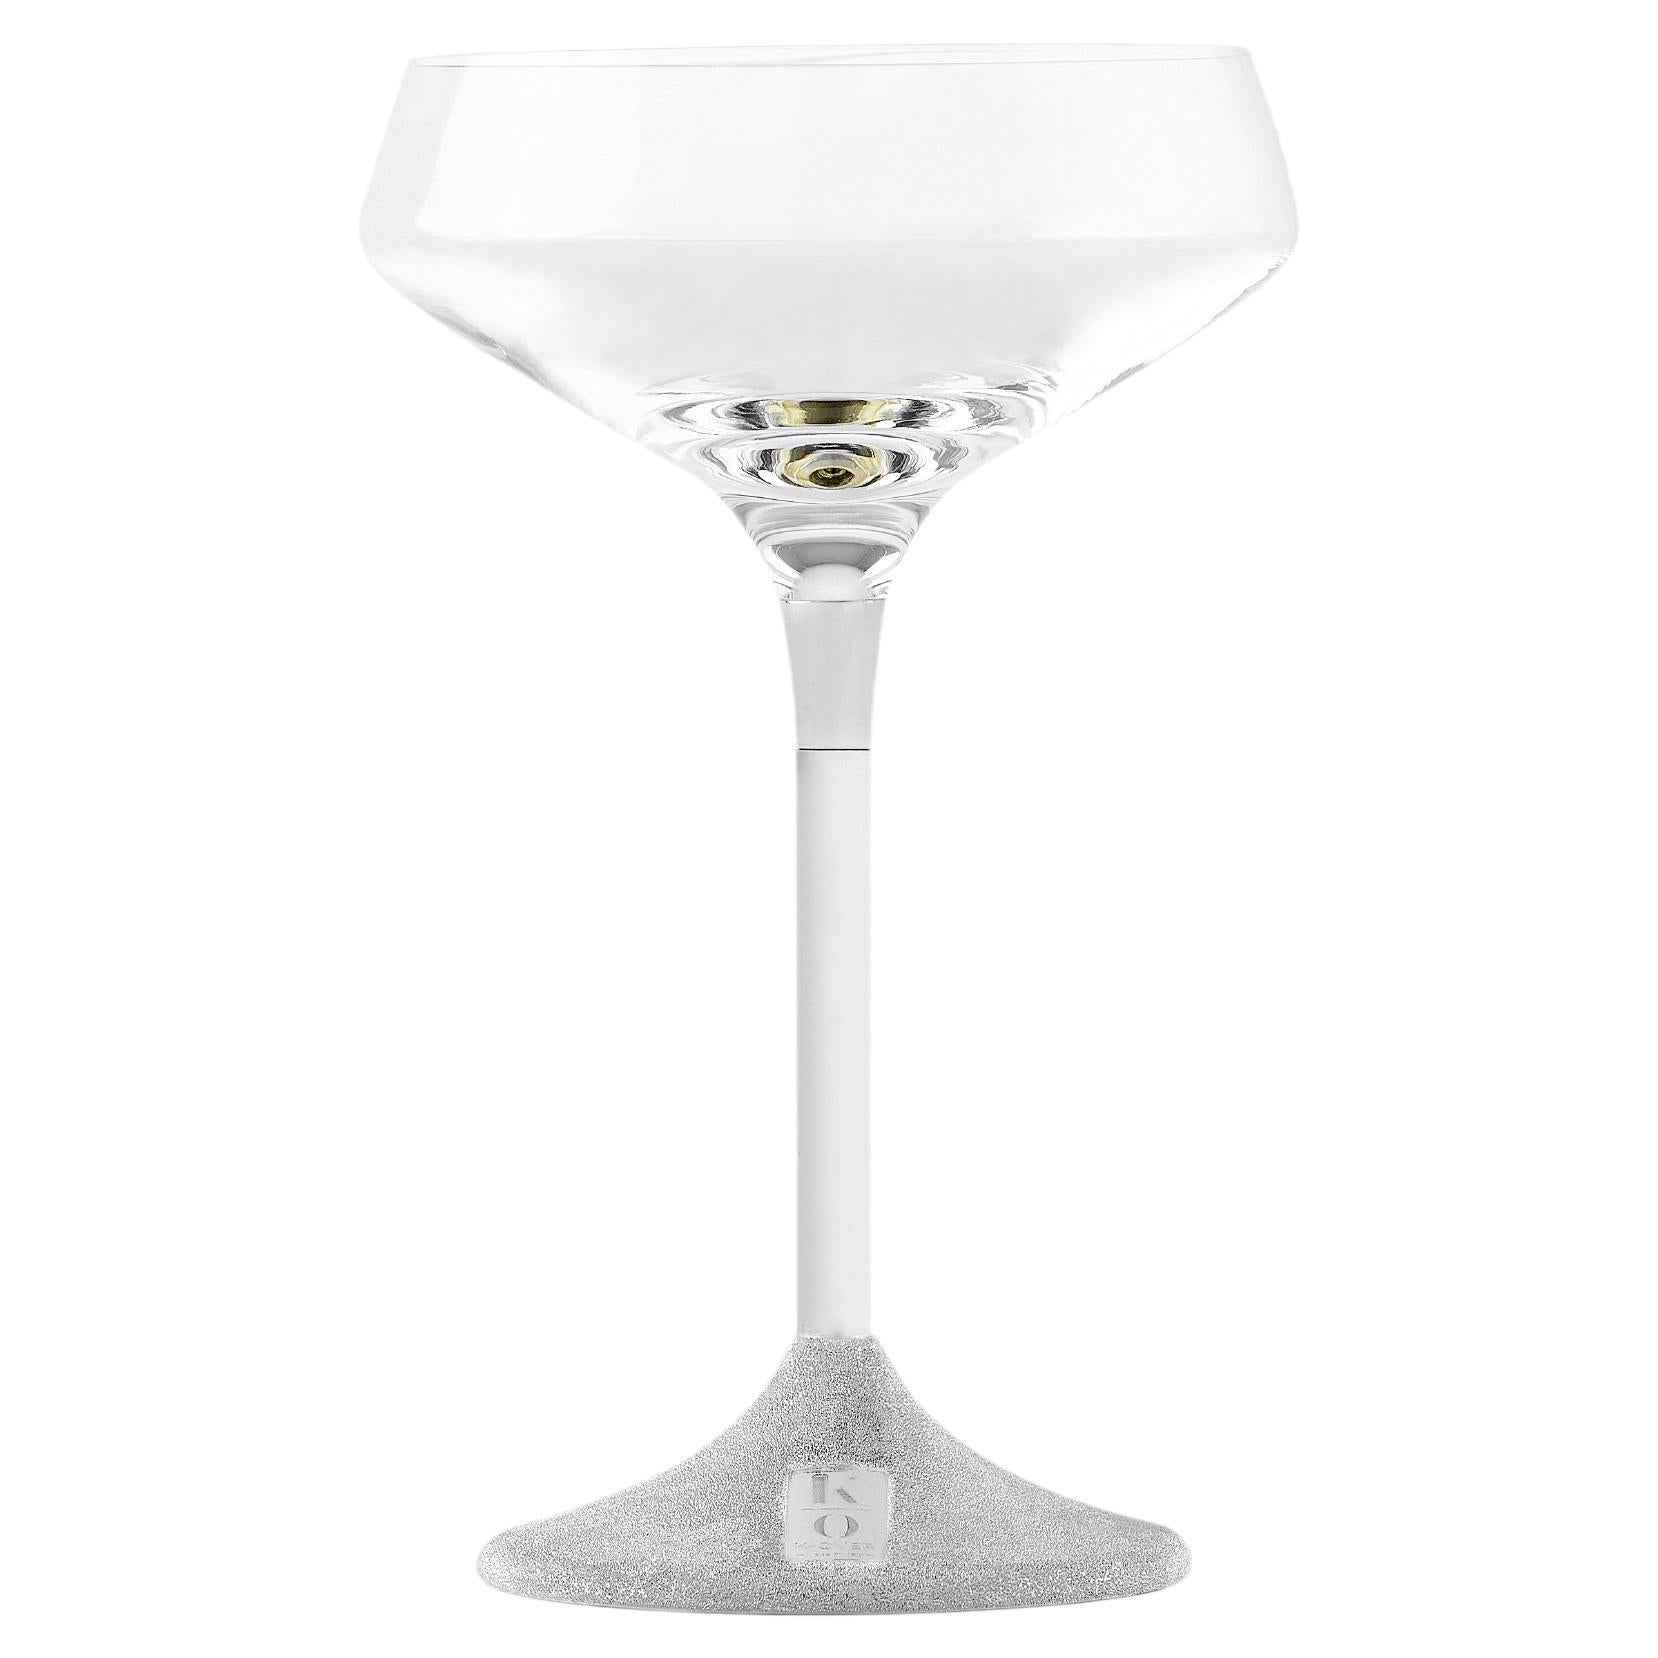 K-OVER coppa champagne
Les bicchieri con stelo in argento sont notre dernière création. Une combinaison parfaite d'élégance et de praticité qui contribuera à embellir votre salle de bain quotidienne mais aussi celle des occasions spéciales. 
Notre